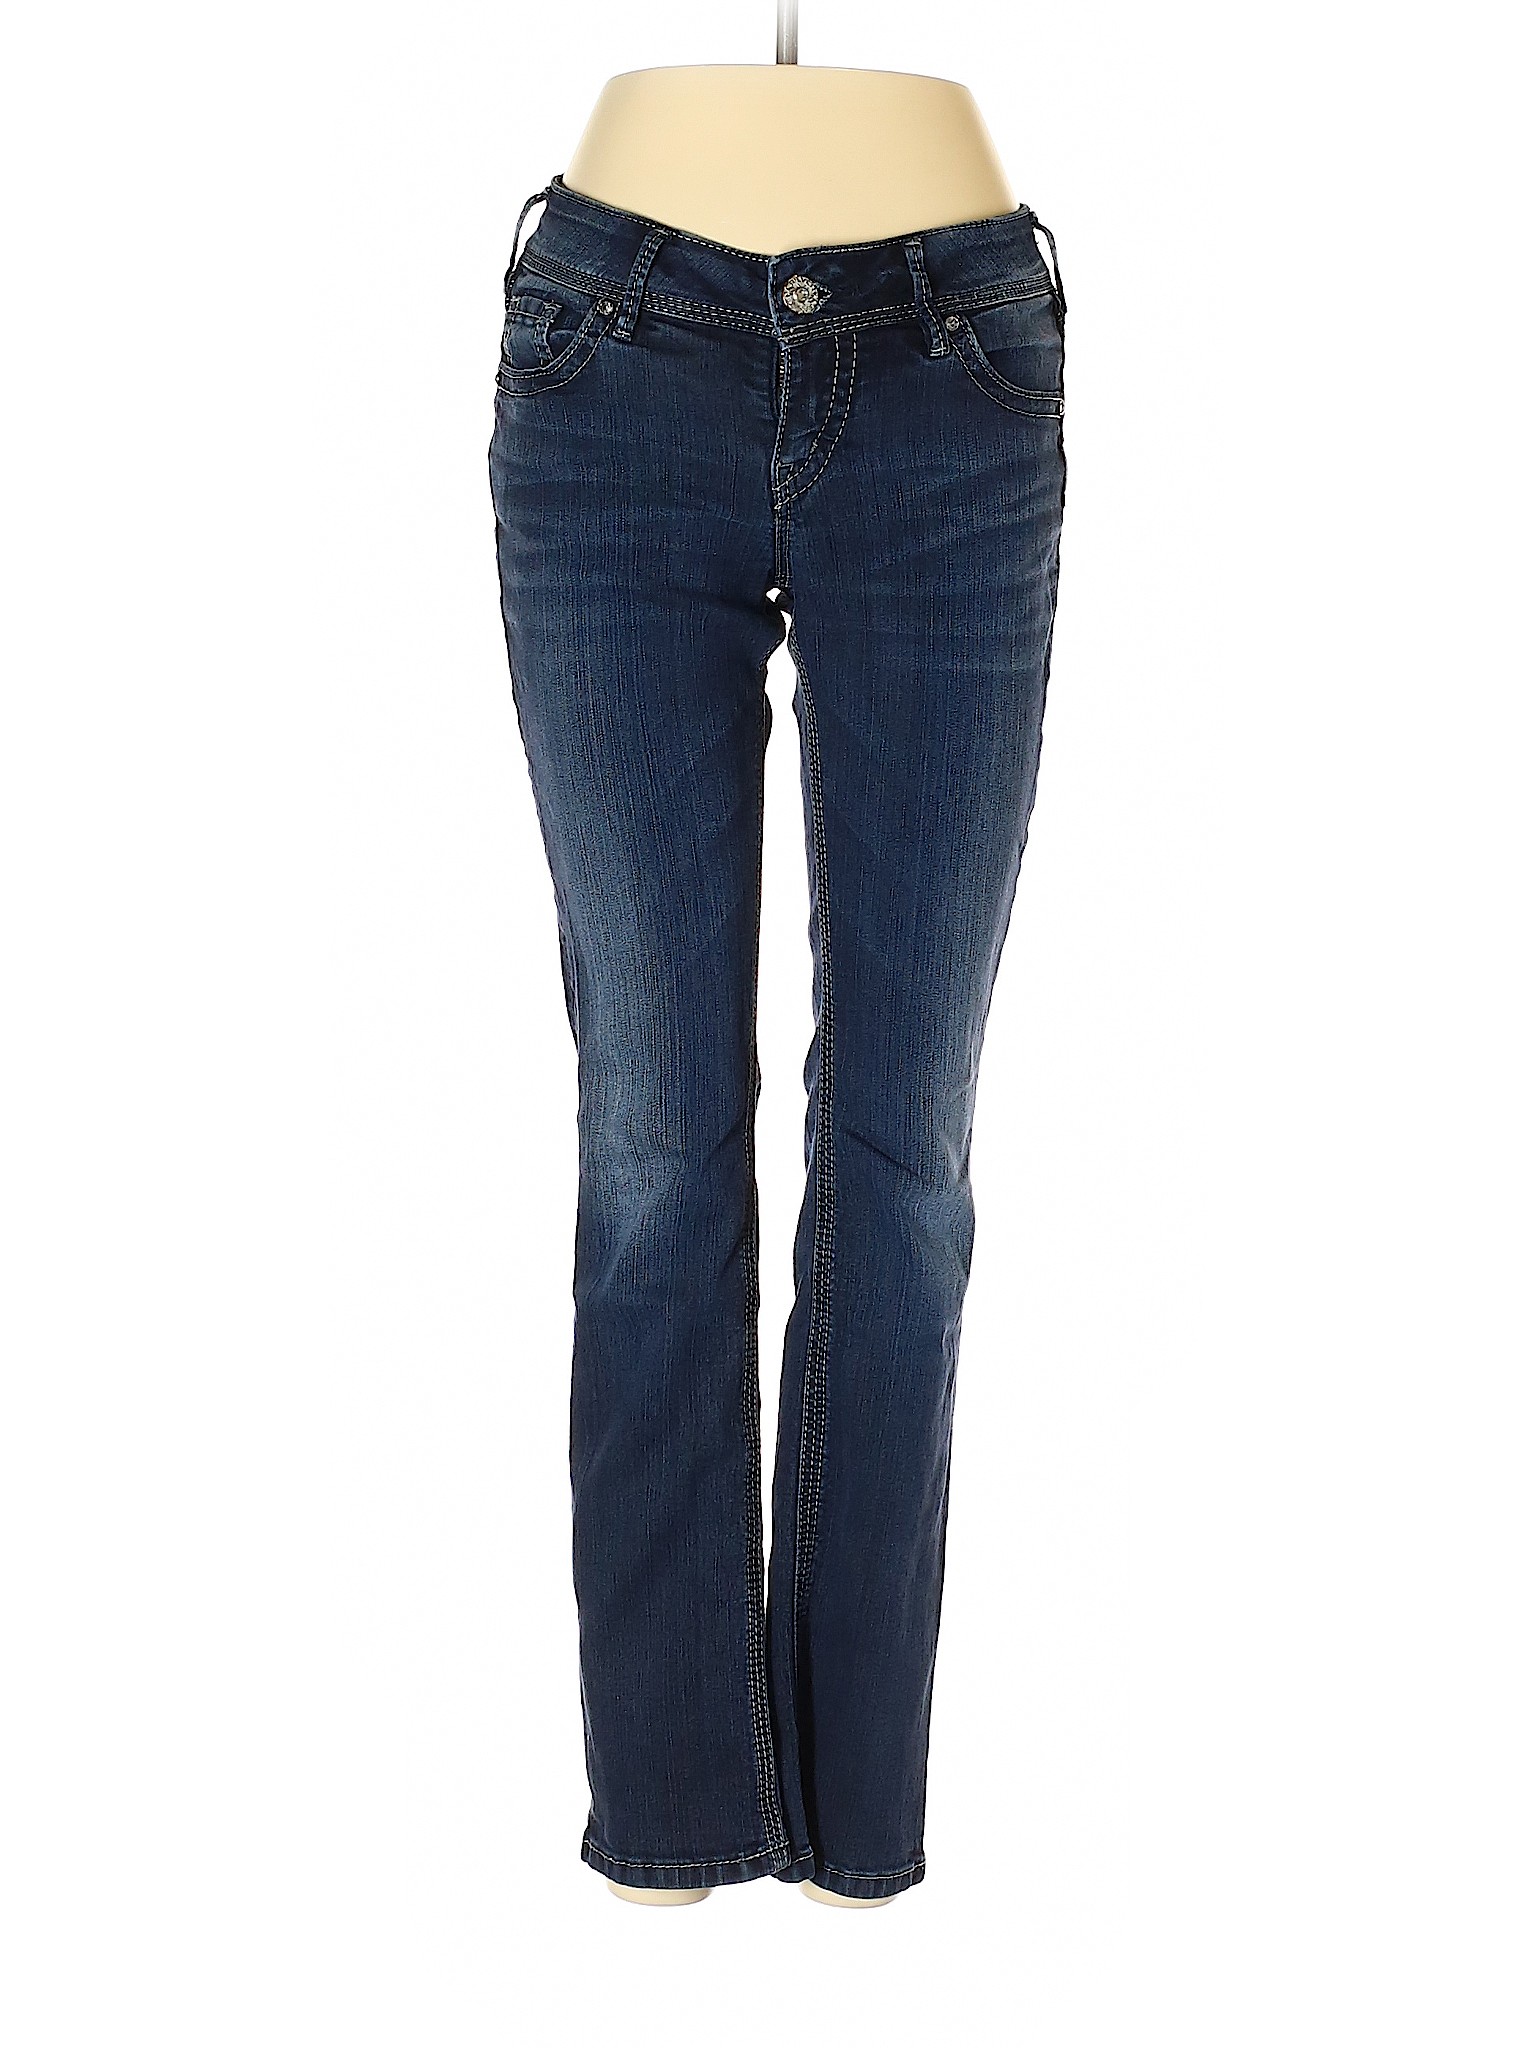 Silver Women Blue Jeans 26W | eBay